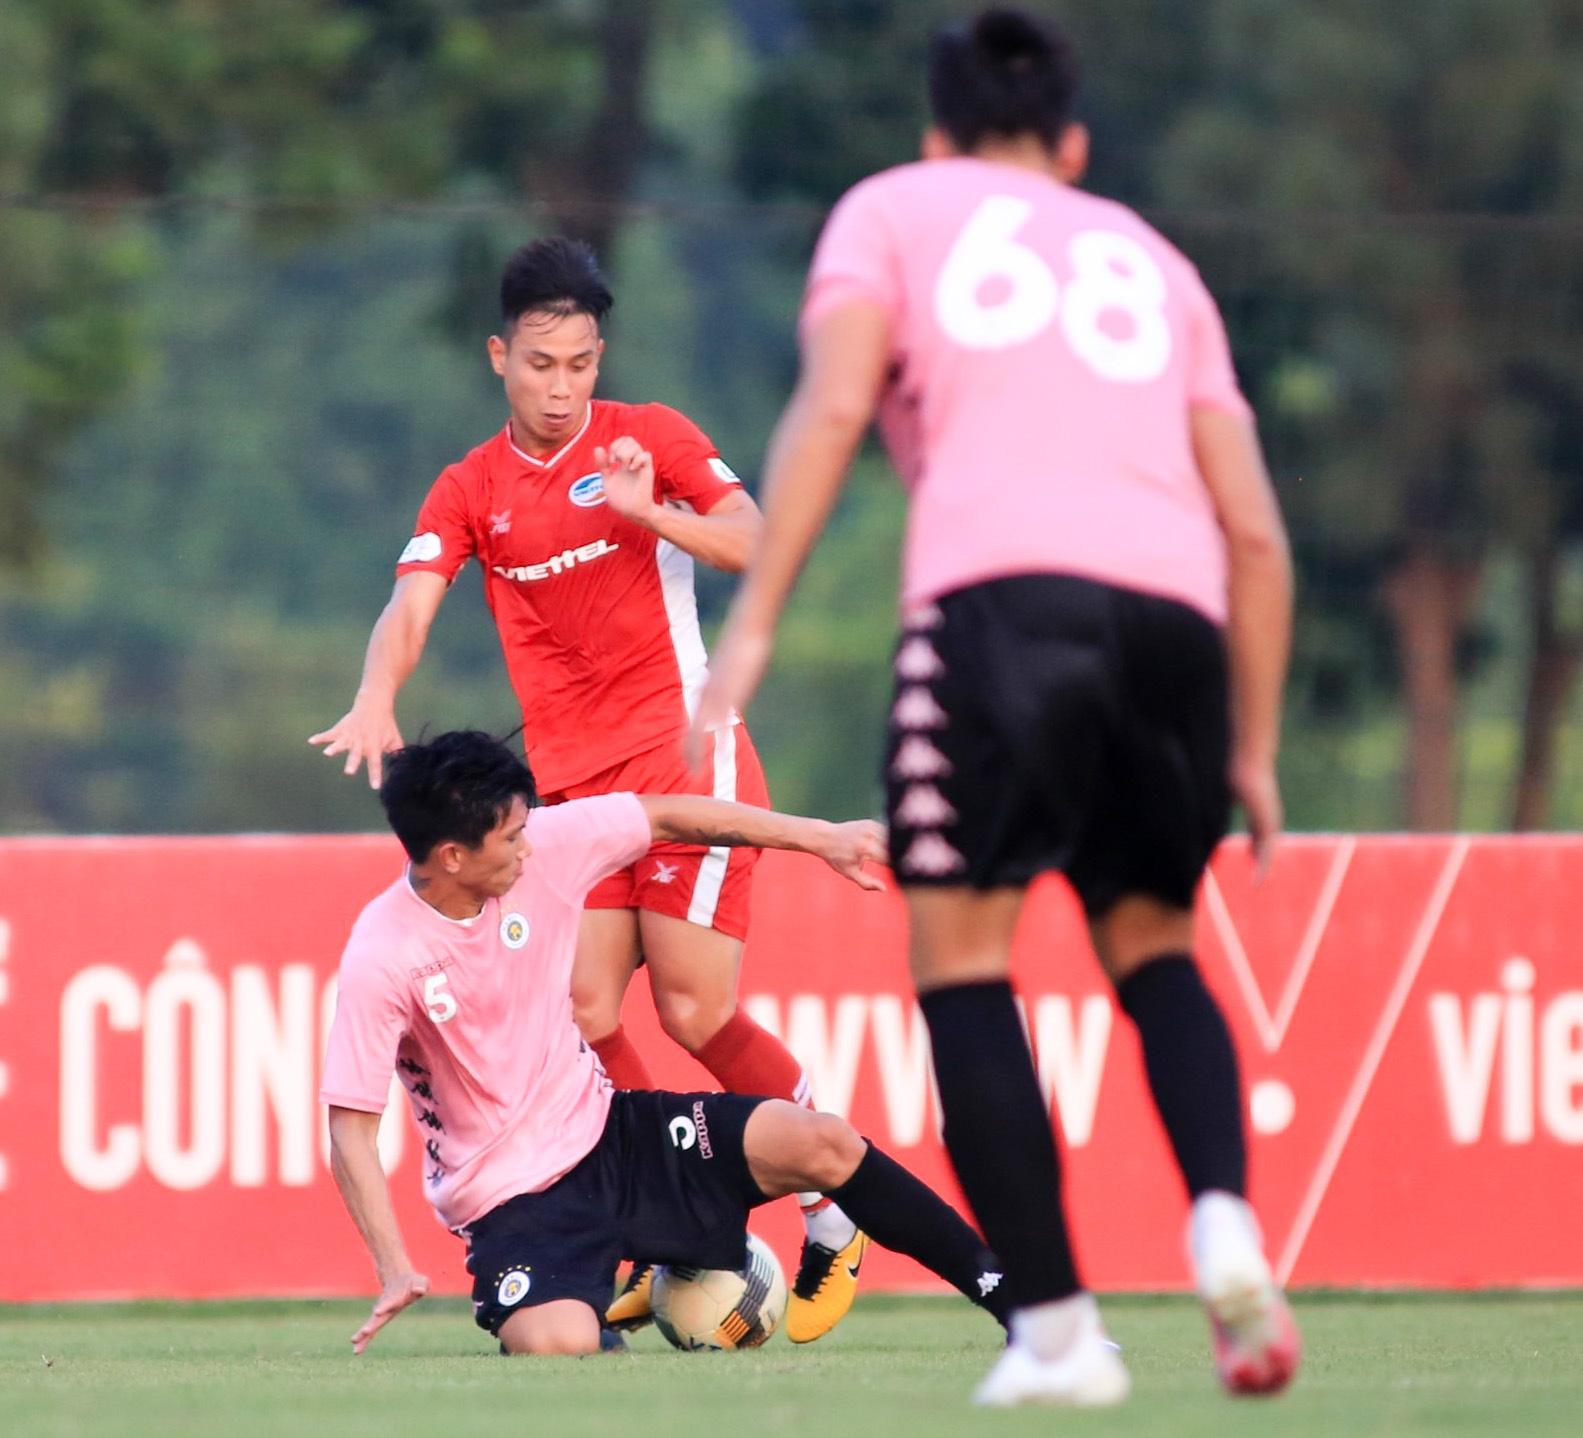 Hà Nội FC đã thắng dễ Viettel với sự tỏa sáng của bộ đôi Văn Hậu - Thành Chung. Cả hai đều đã có những pha bóng đẹp mắt và đóng góp rất lớn vào chiến thắng của đội. Hãy xem lại những khoảnh khắc đáng nhớ của cả hai trong trận đấu này.